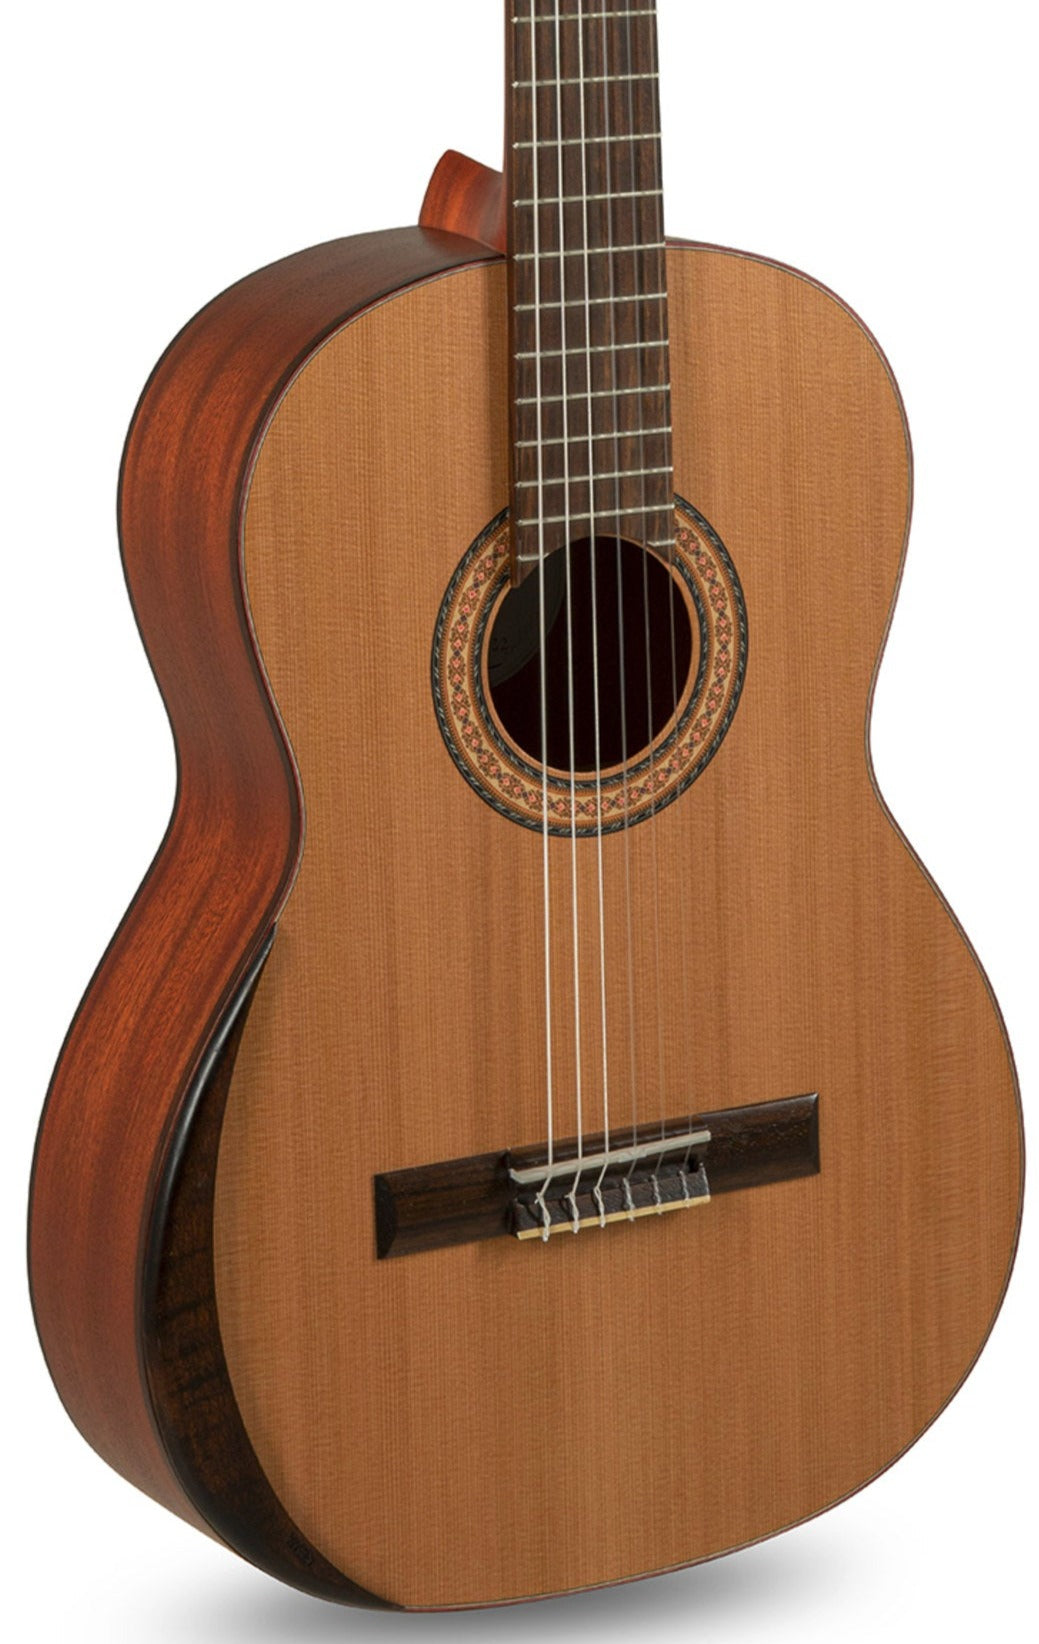 Manuel Rodríguez T-65 Tradicion Classical Guitar - Solid Cedar Top